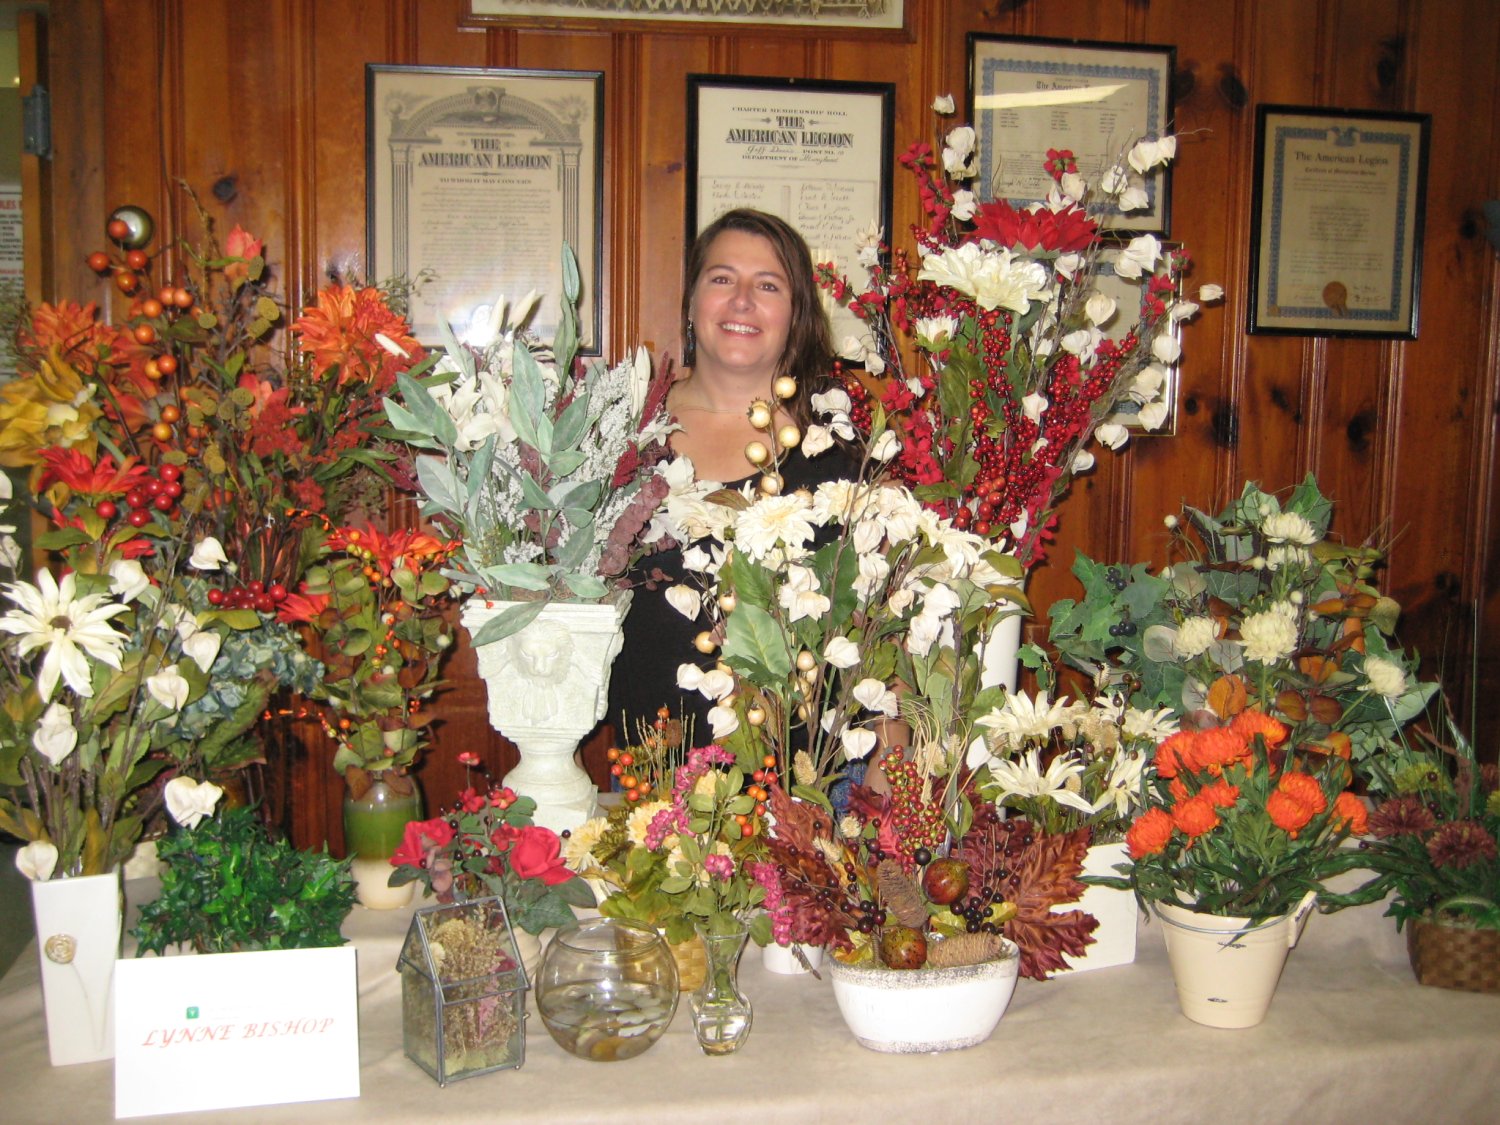  Lynne Bishop shows her beautiful silk flower arrangements.  